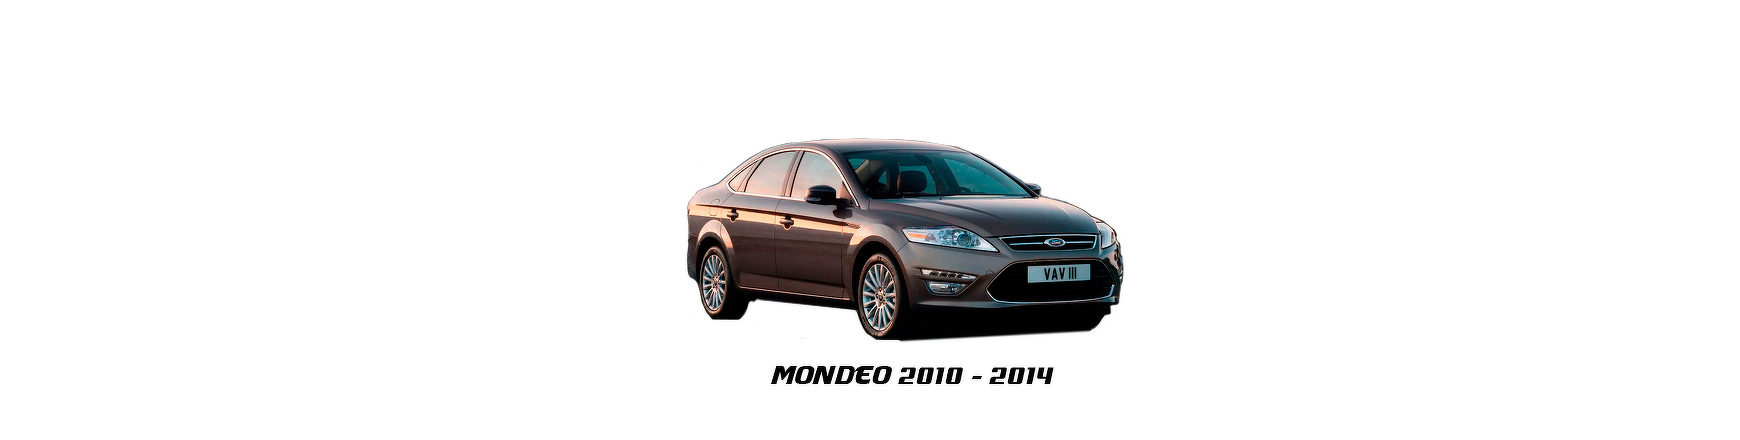 Recambios de Ford Mondeo de 2011, 2012 y 2013.